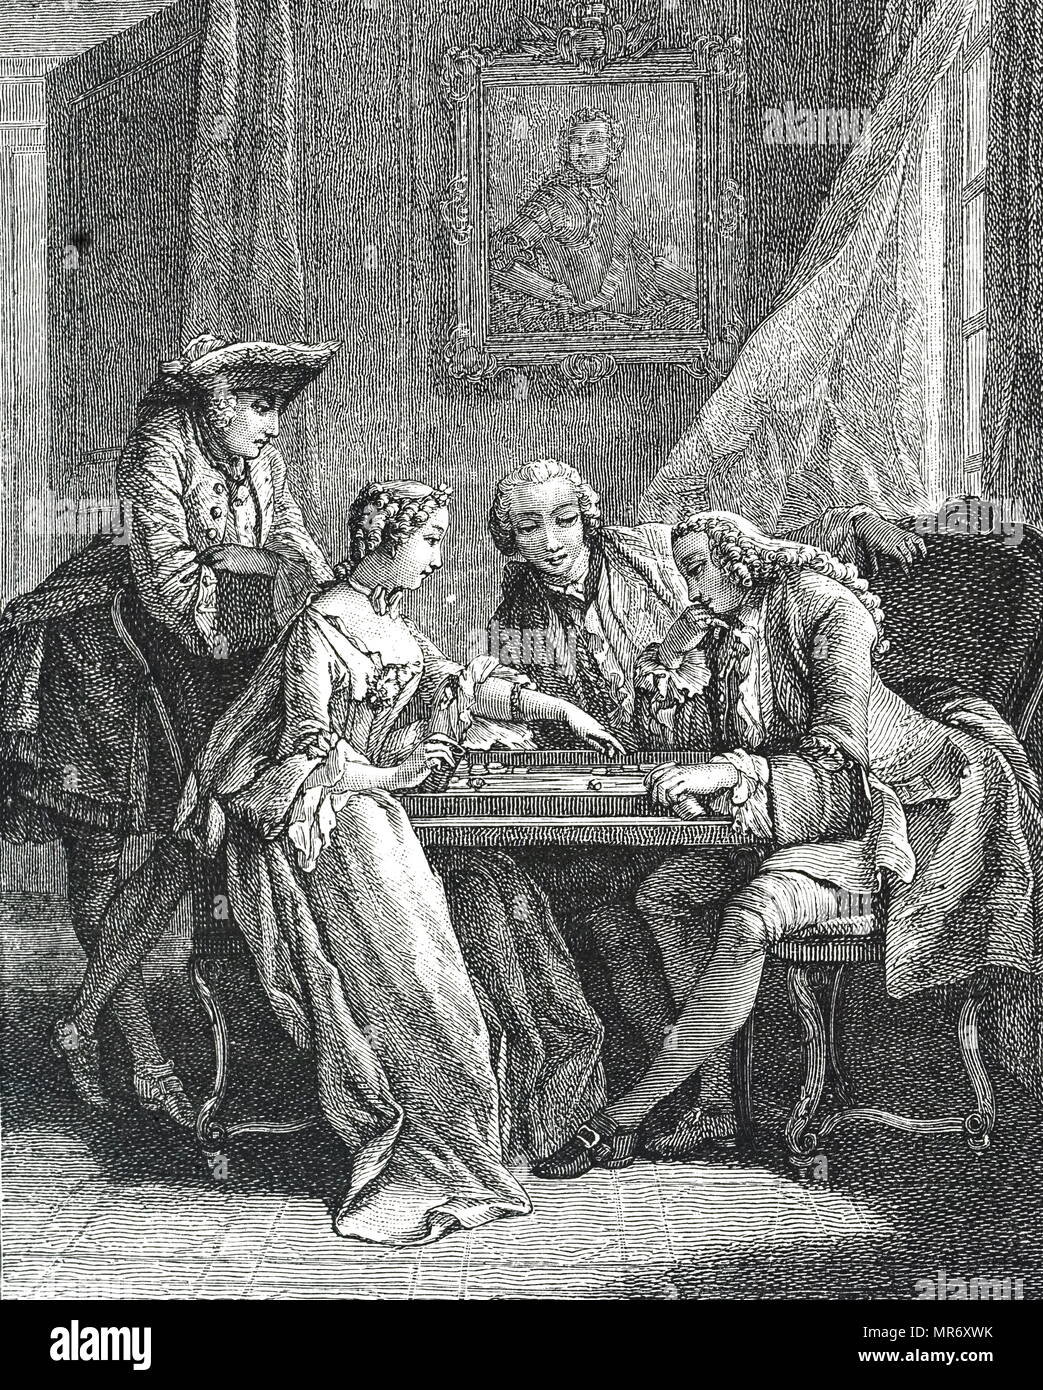 Kupferstich mit der Darstellung eines Spiels des Tric-Trac - eine frühe Form des Backgammon. Vom 18. Jahrhundert Stockfoto